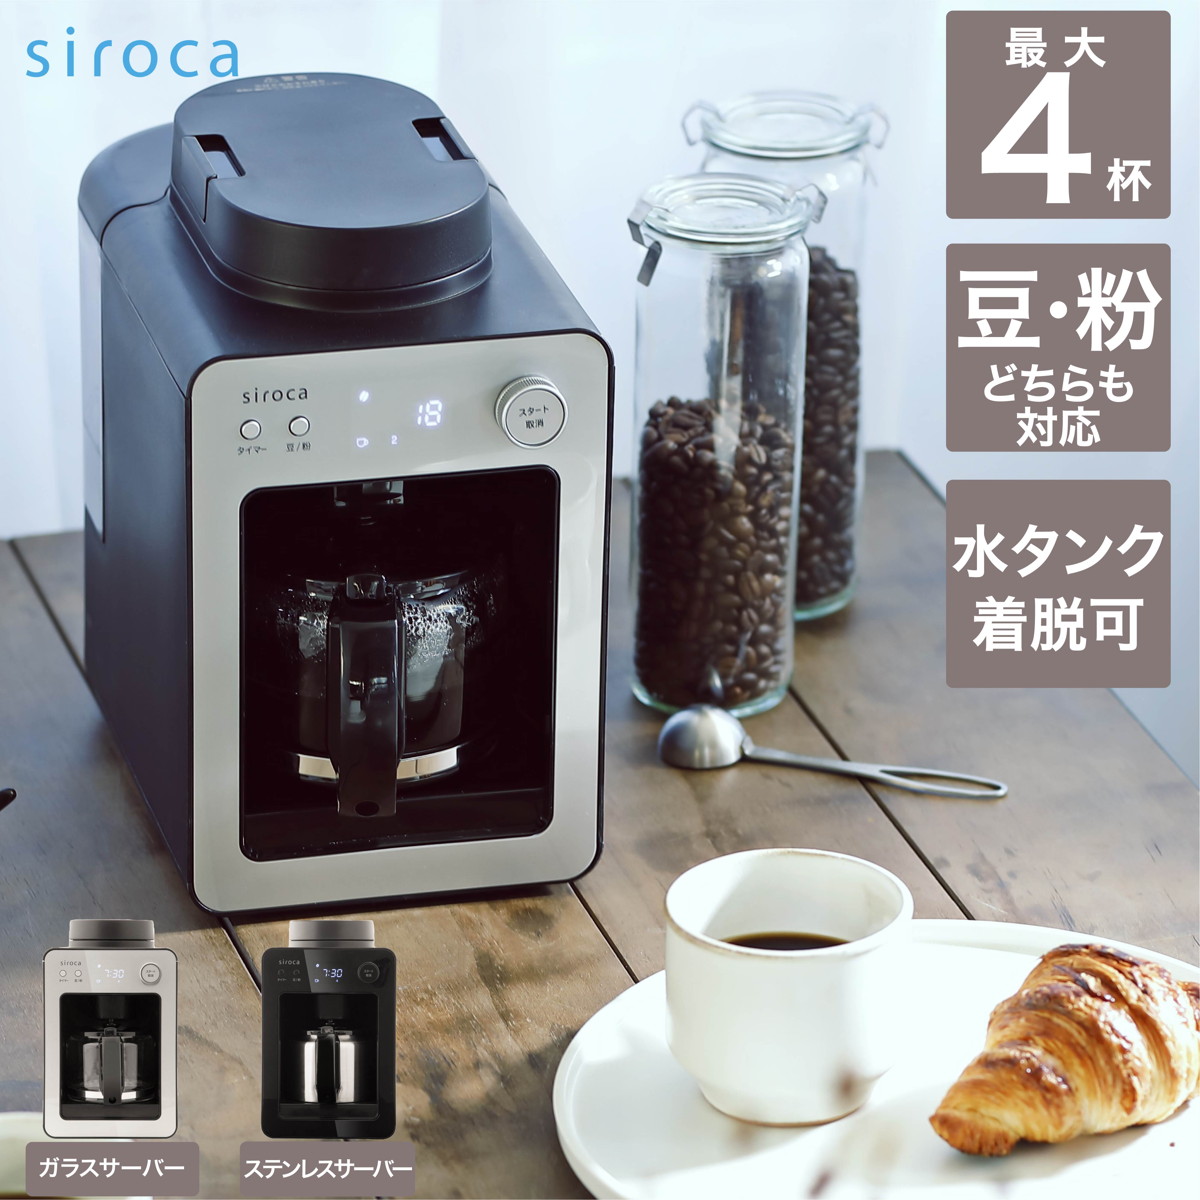 シロカ siroca 全自動コーヒーメーカー カフェばこ ガラスサーバー 静音 ミル4段階 コンパクト 豆・粉両対応 蒸らし タイマー機能 シルバー SC-A351(S)